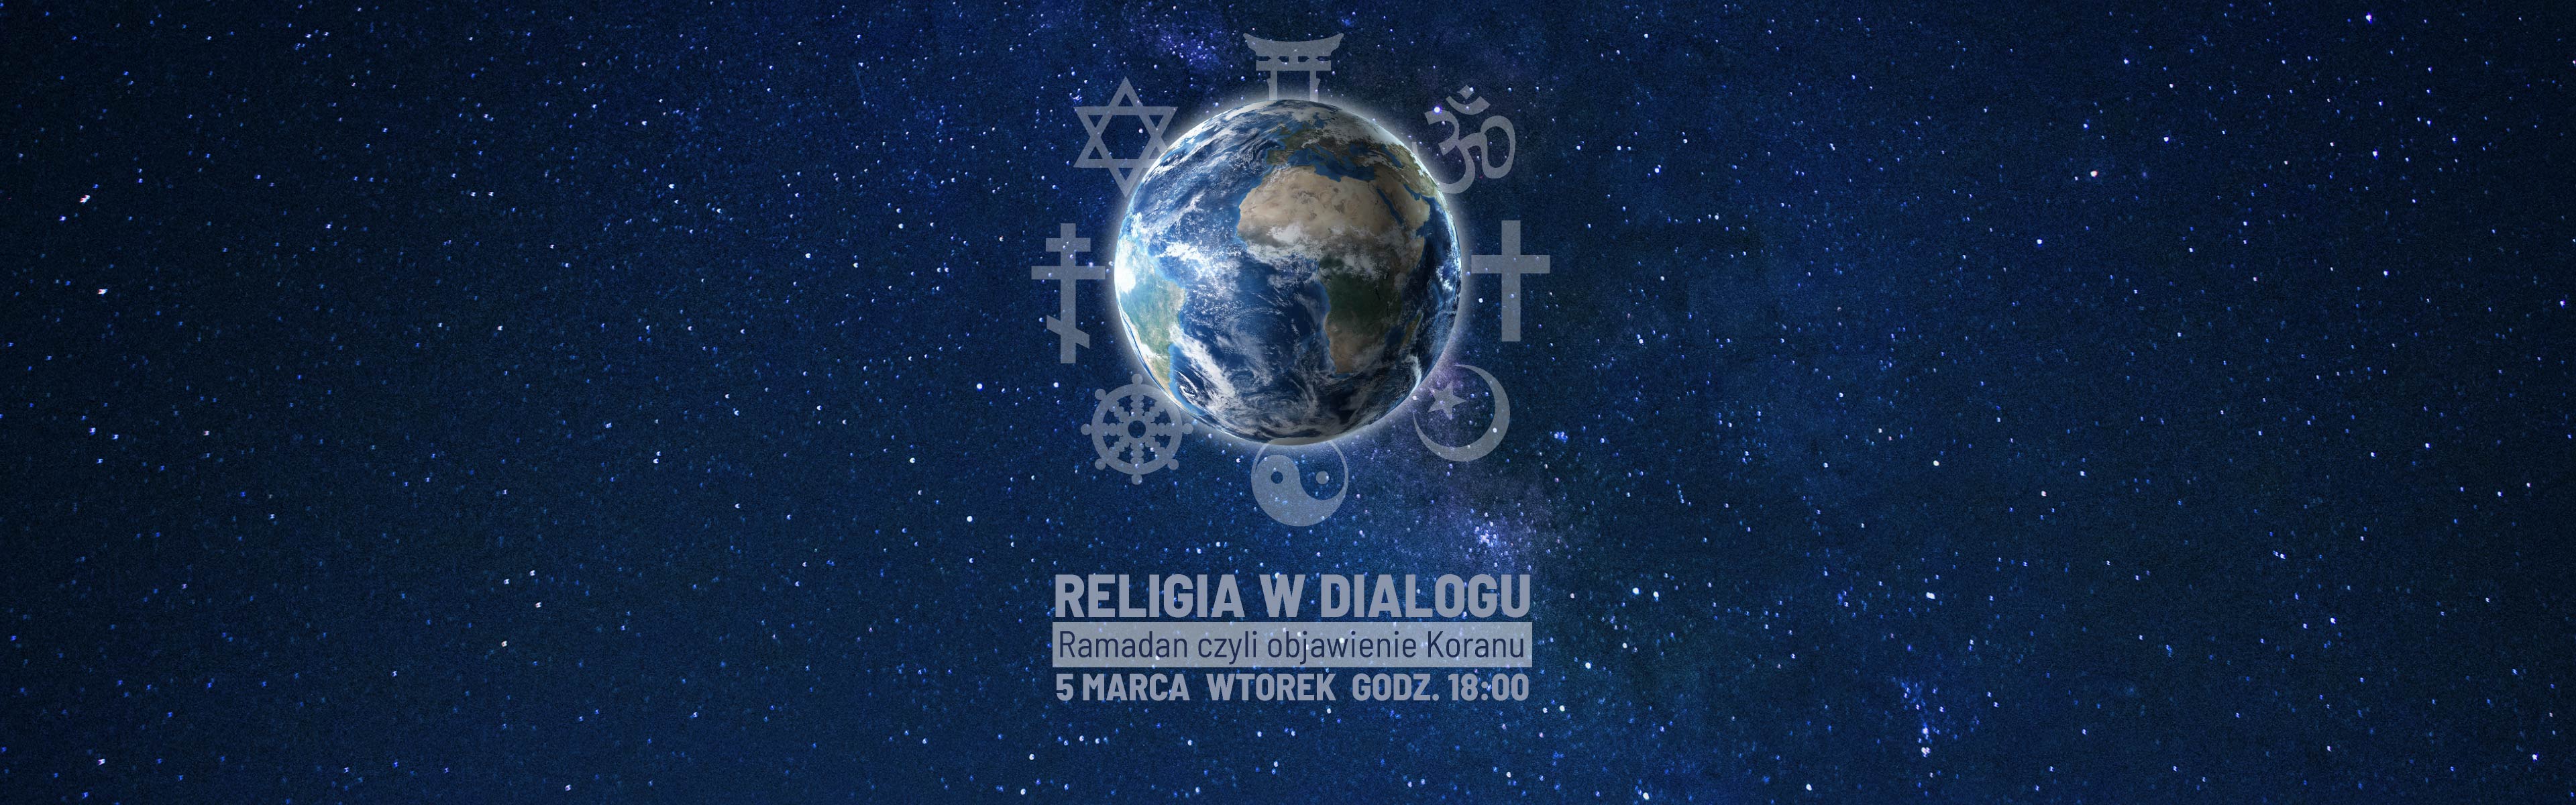 religia_w_dialogu_RAMADAN_SLIDER